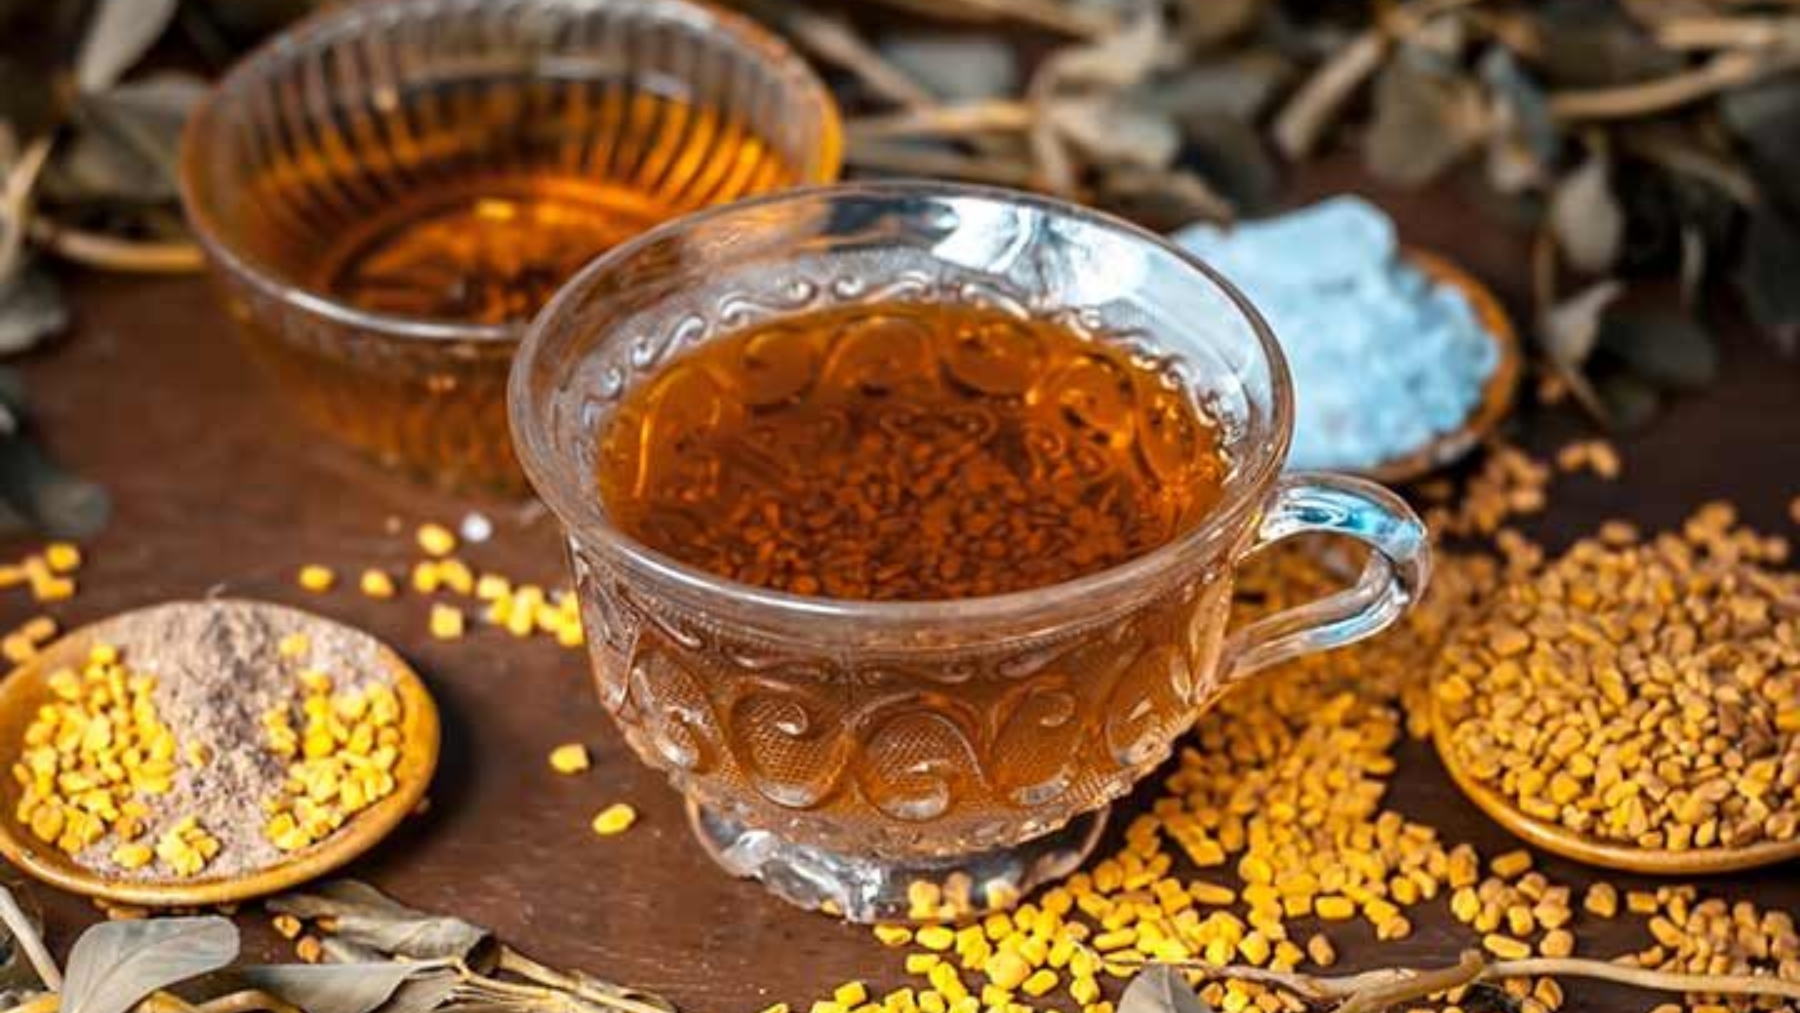 египетский чай для похудения фото